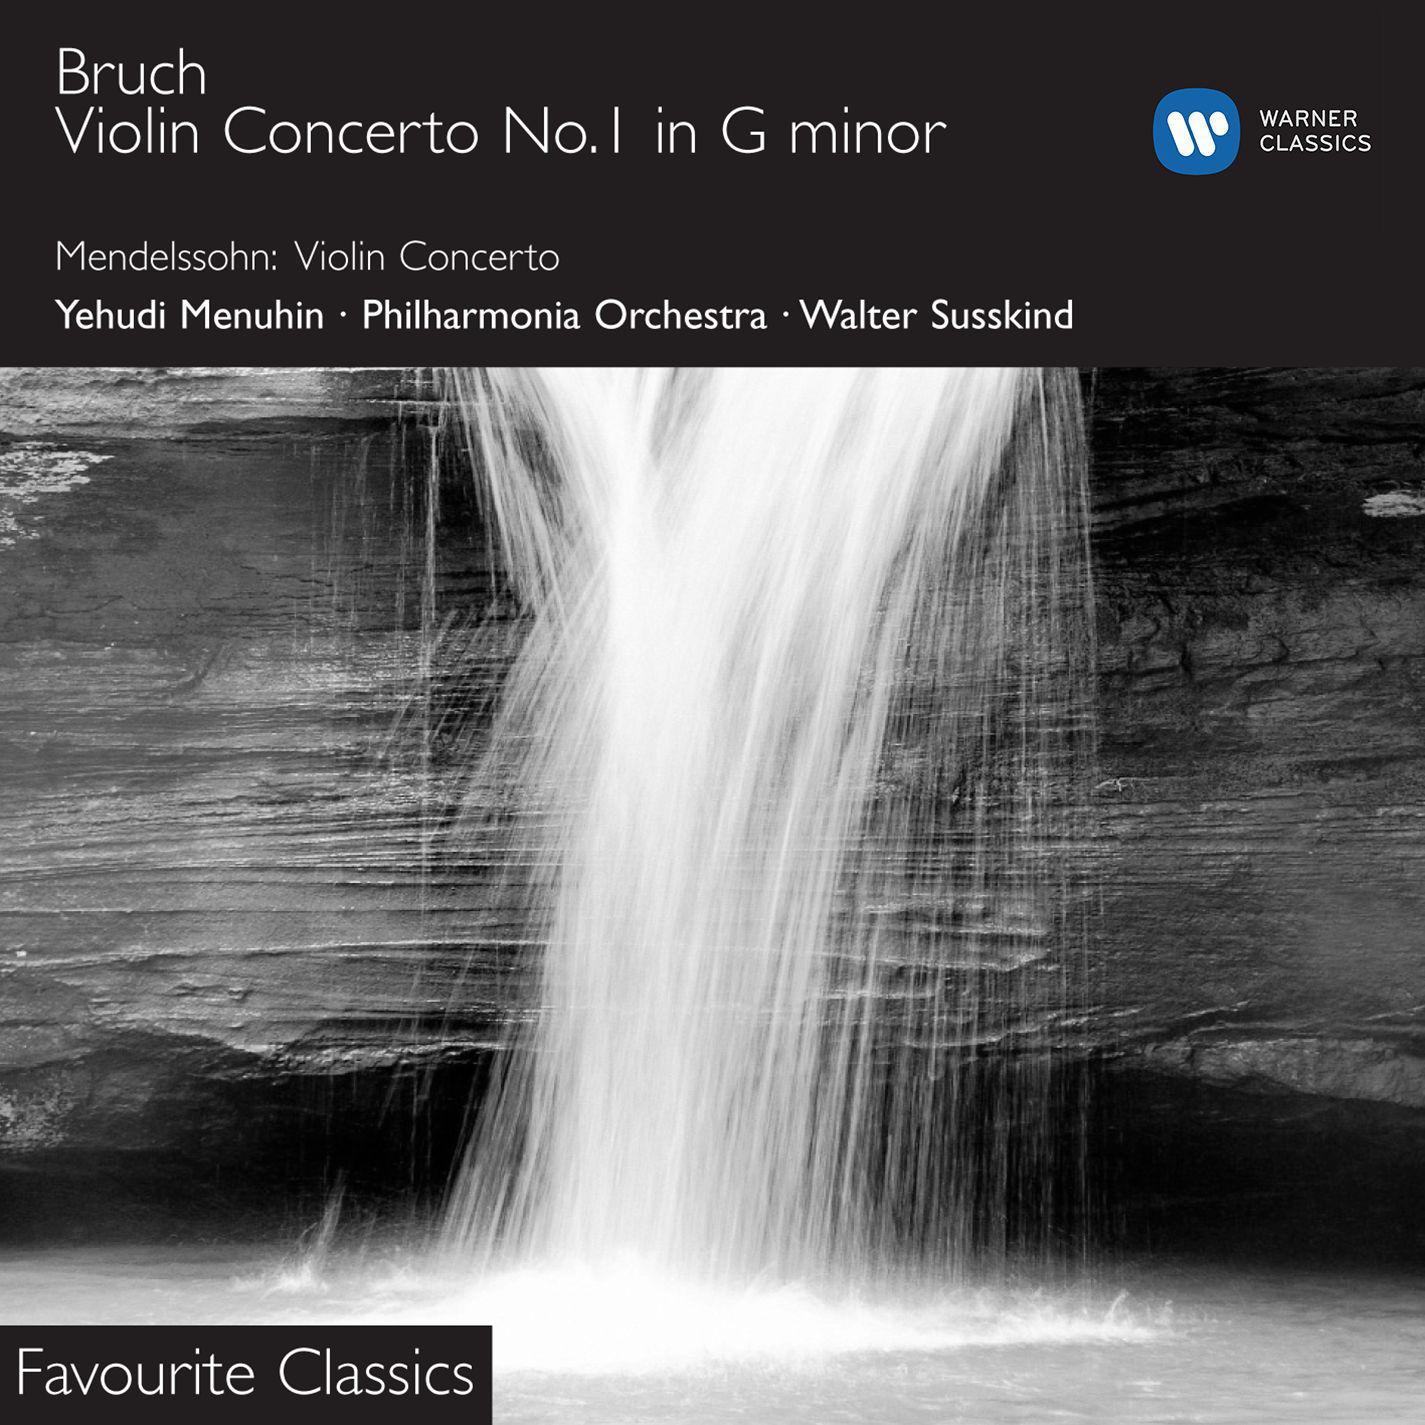 Violin Concerto No. 1 in G Minor, Op. 26:I. Prelude. Allegro moderato